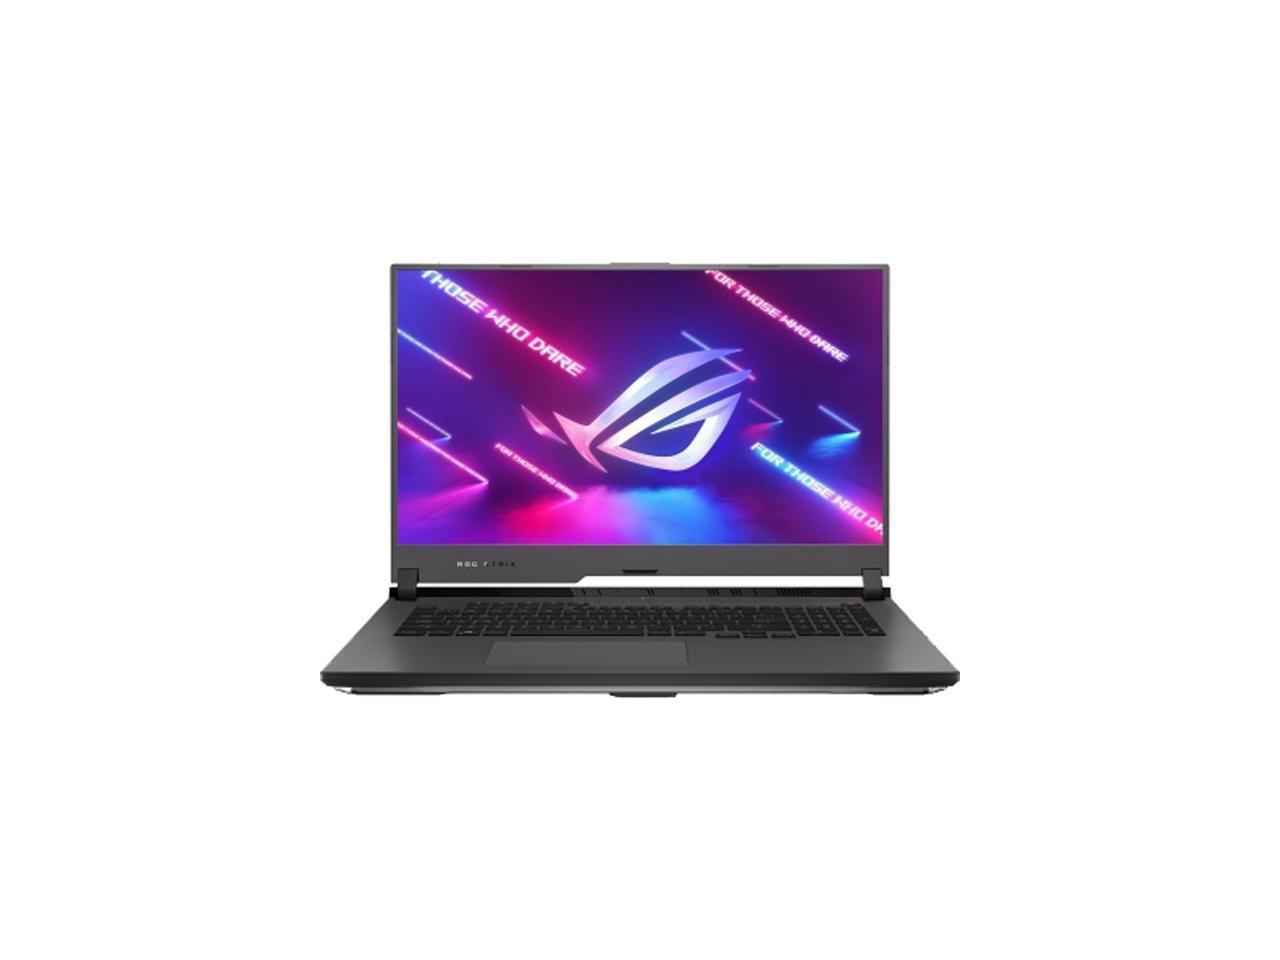 Asus Rog Strix G17 (2021) Gaming Laptop, 17.3" 300Hz Ips Type Fhd, Nvidia Geforce Rtx 3070 Laptop